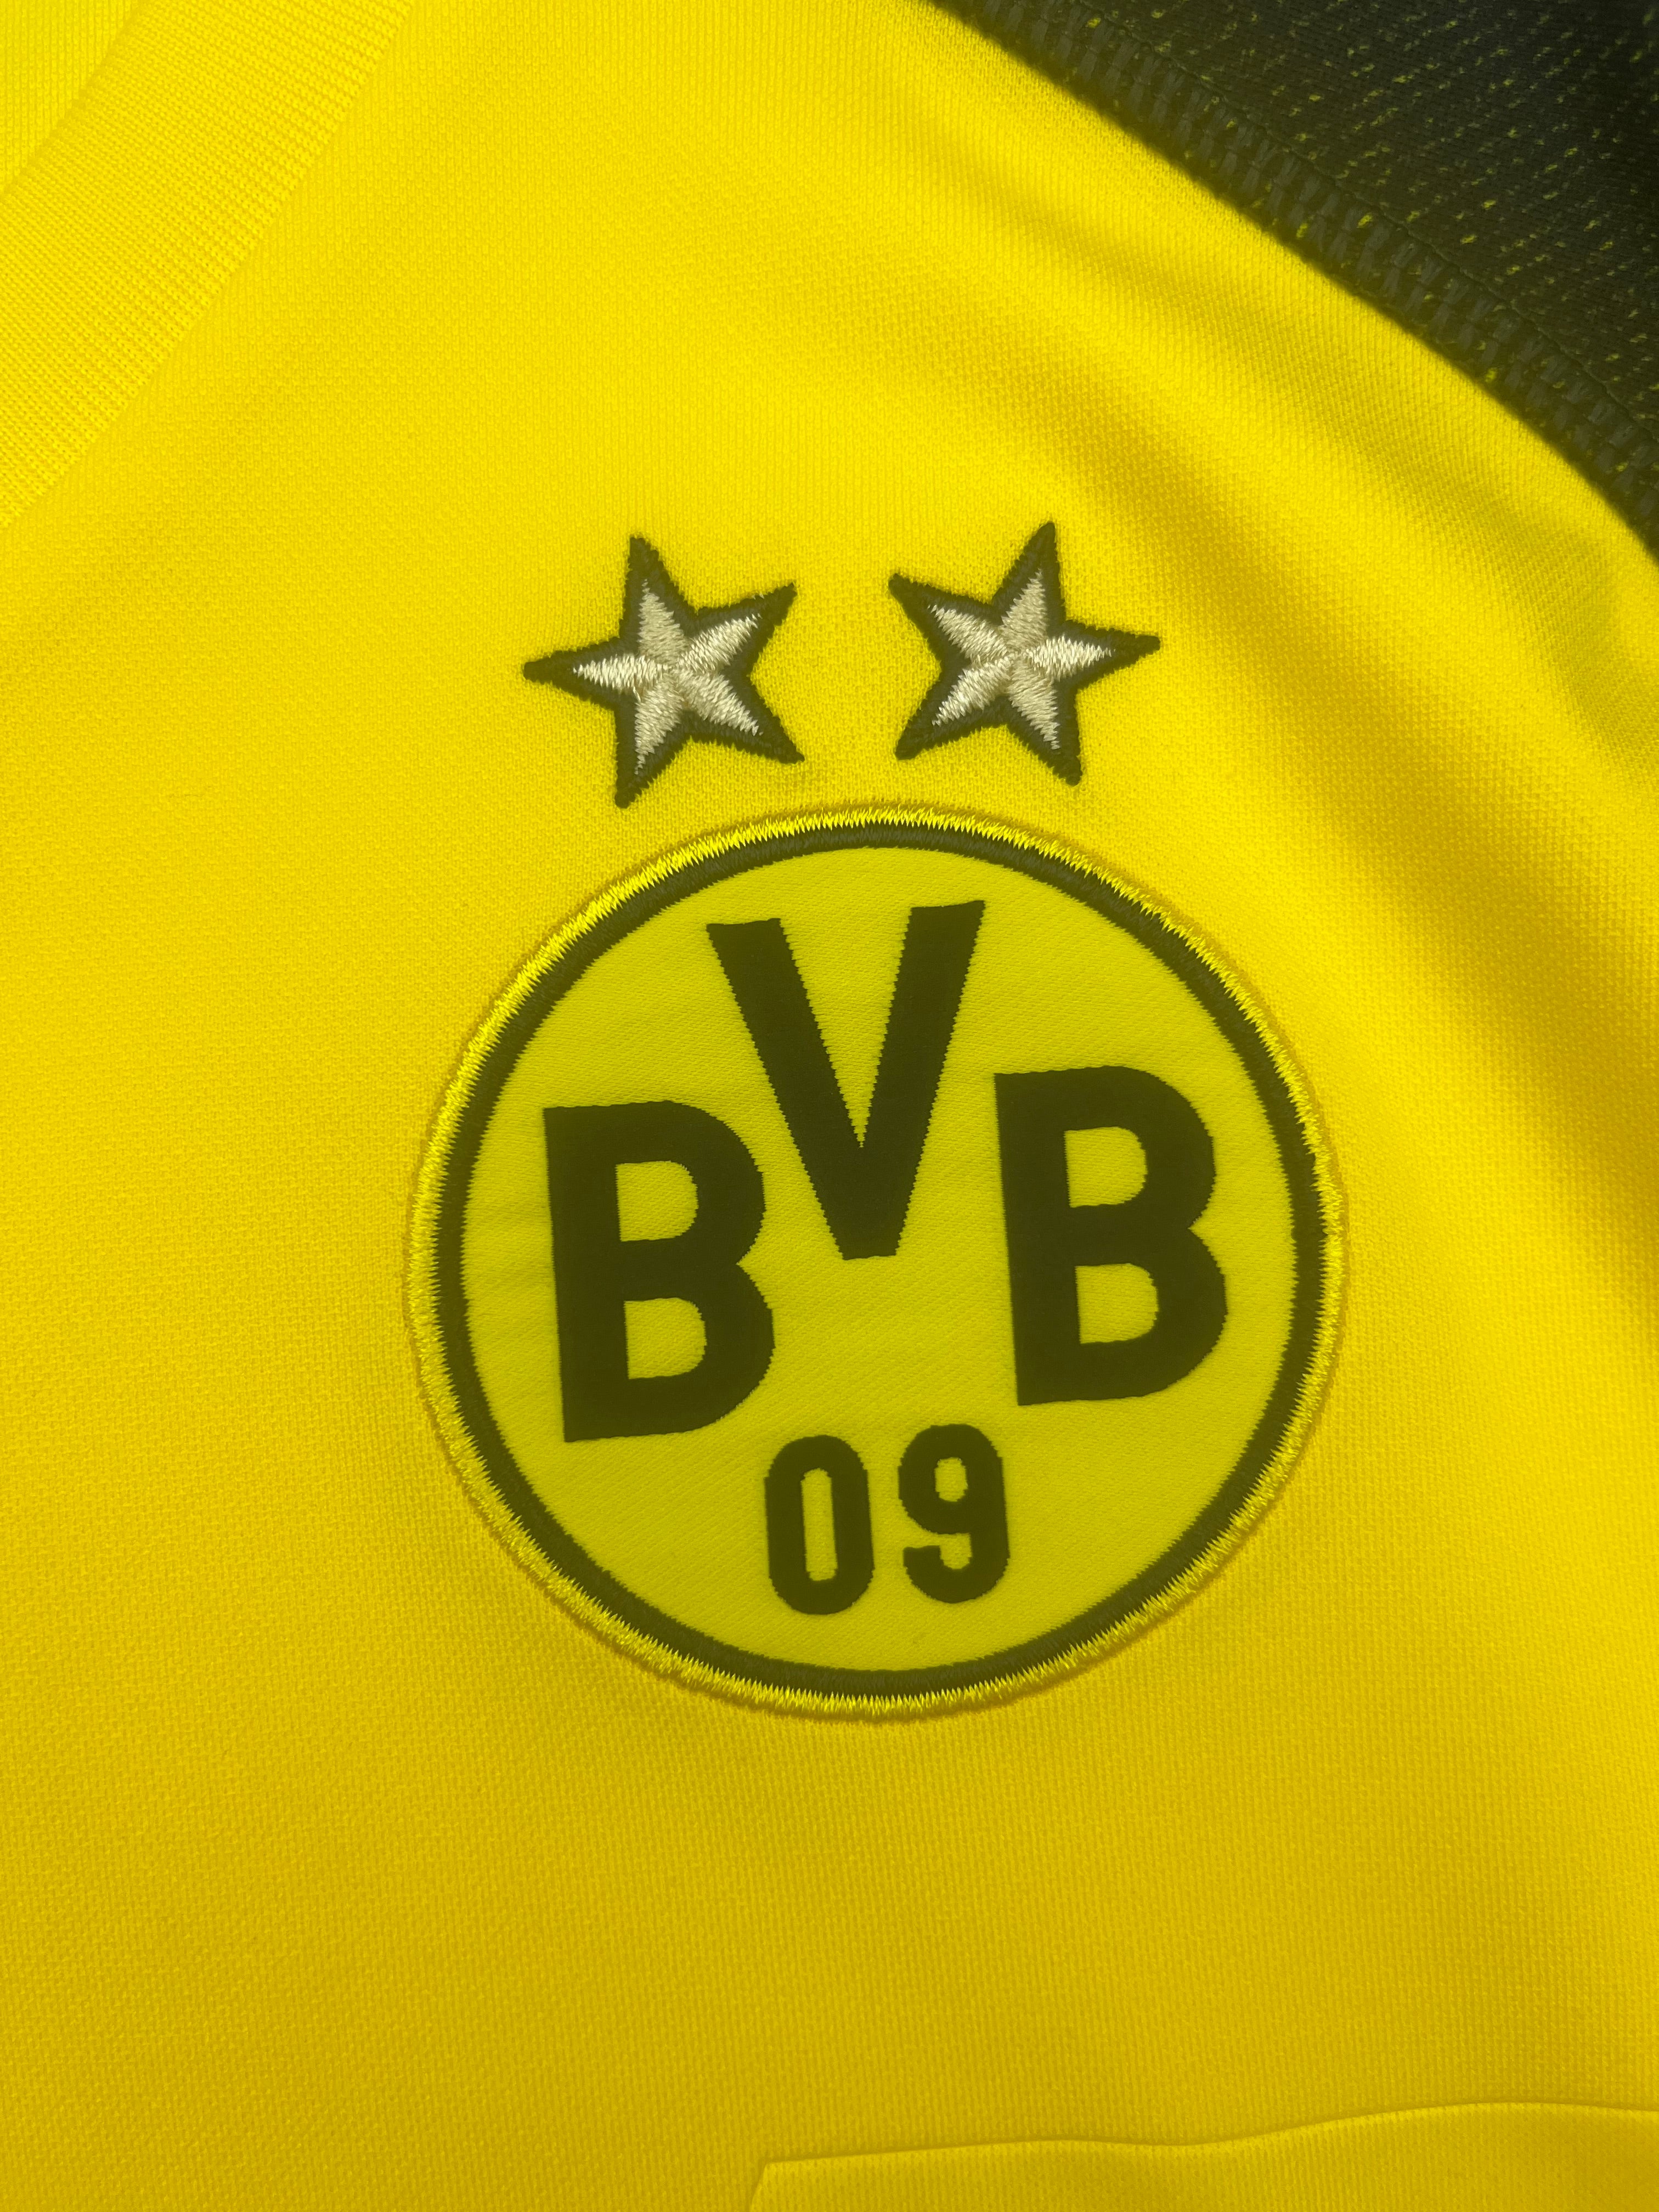 2018/19 Borussia Dortmund Home Shirt (L) 9/10